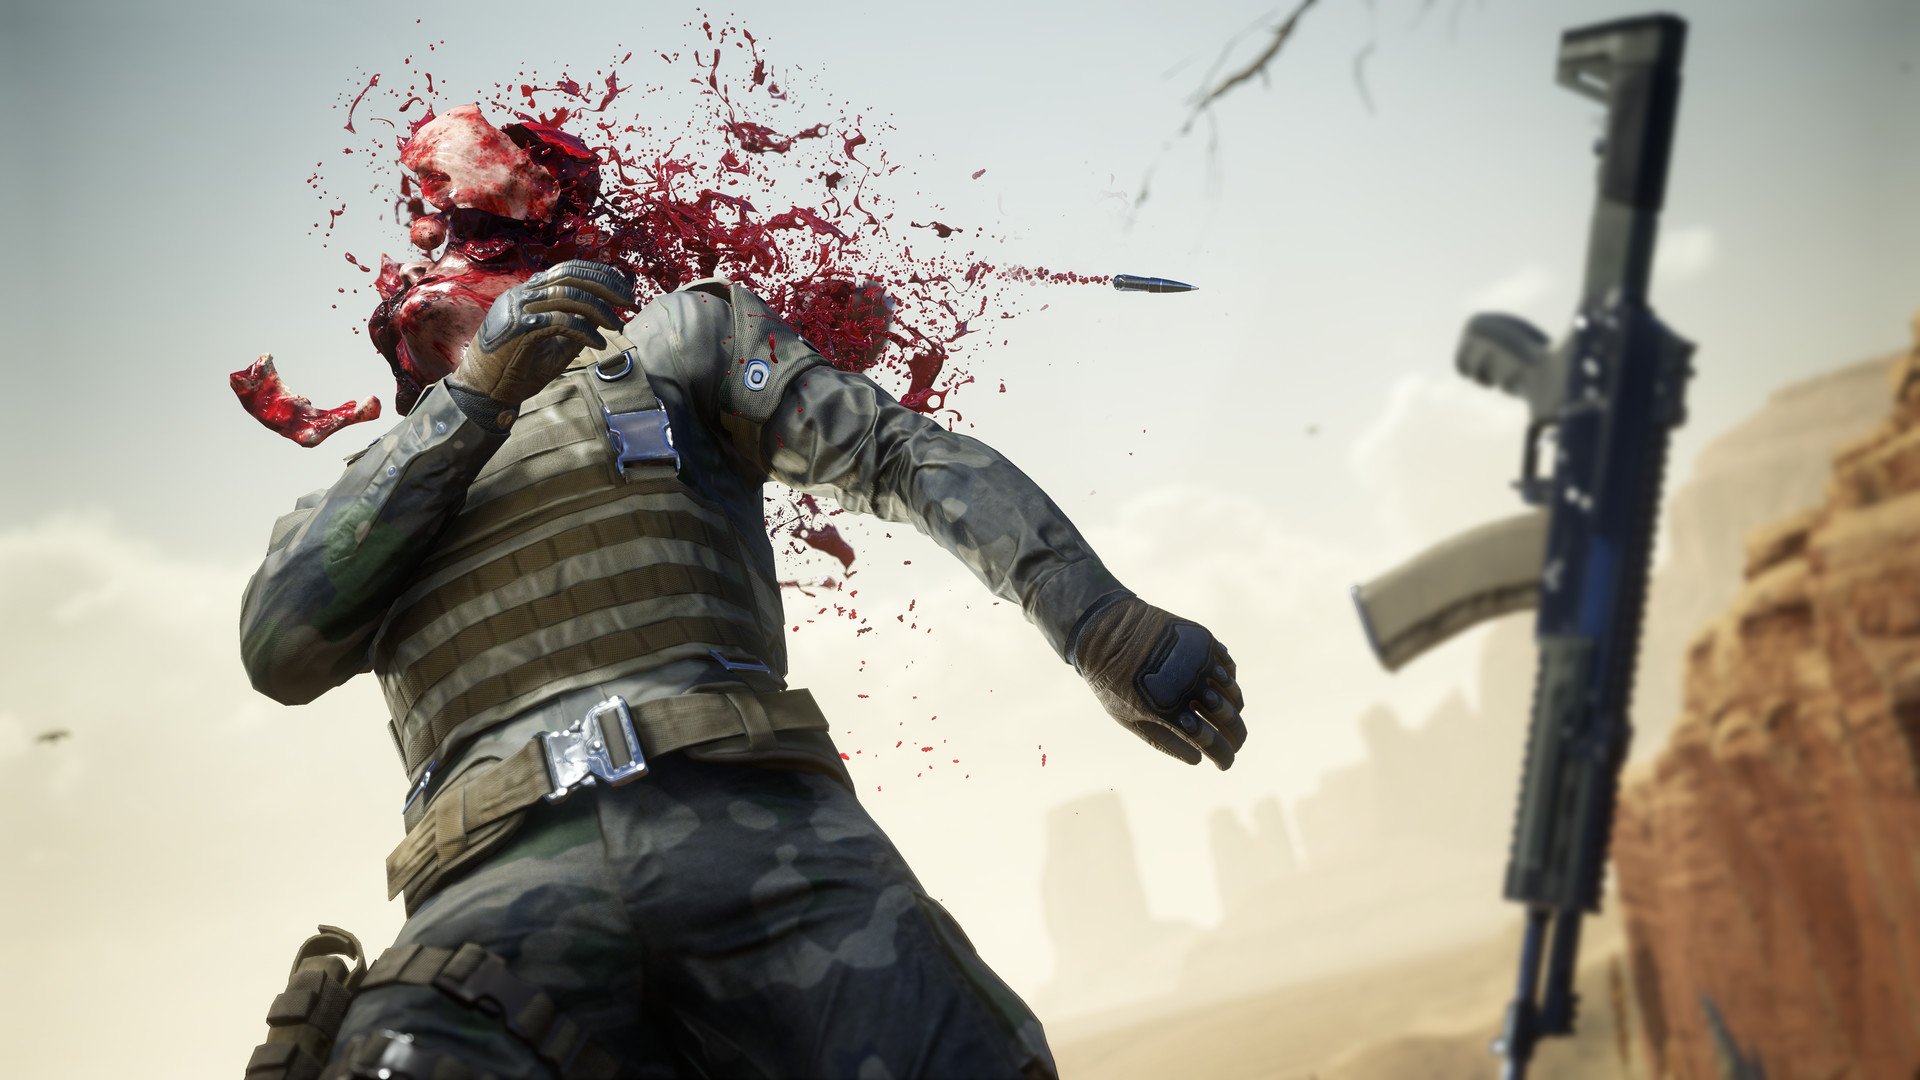 Команда разработчиков Sniper: Ghost Warrior стала отдельной студией в составе CI Games